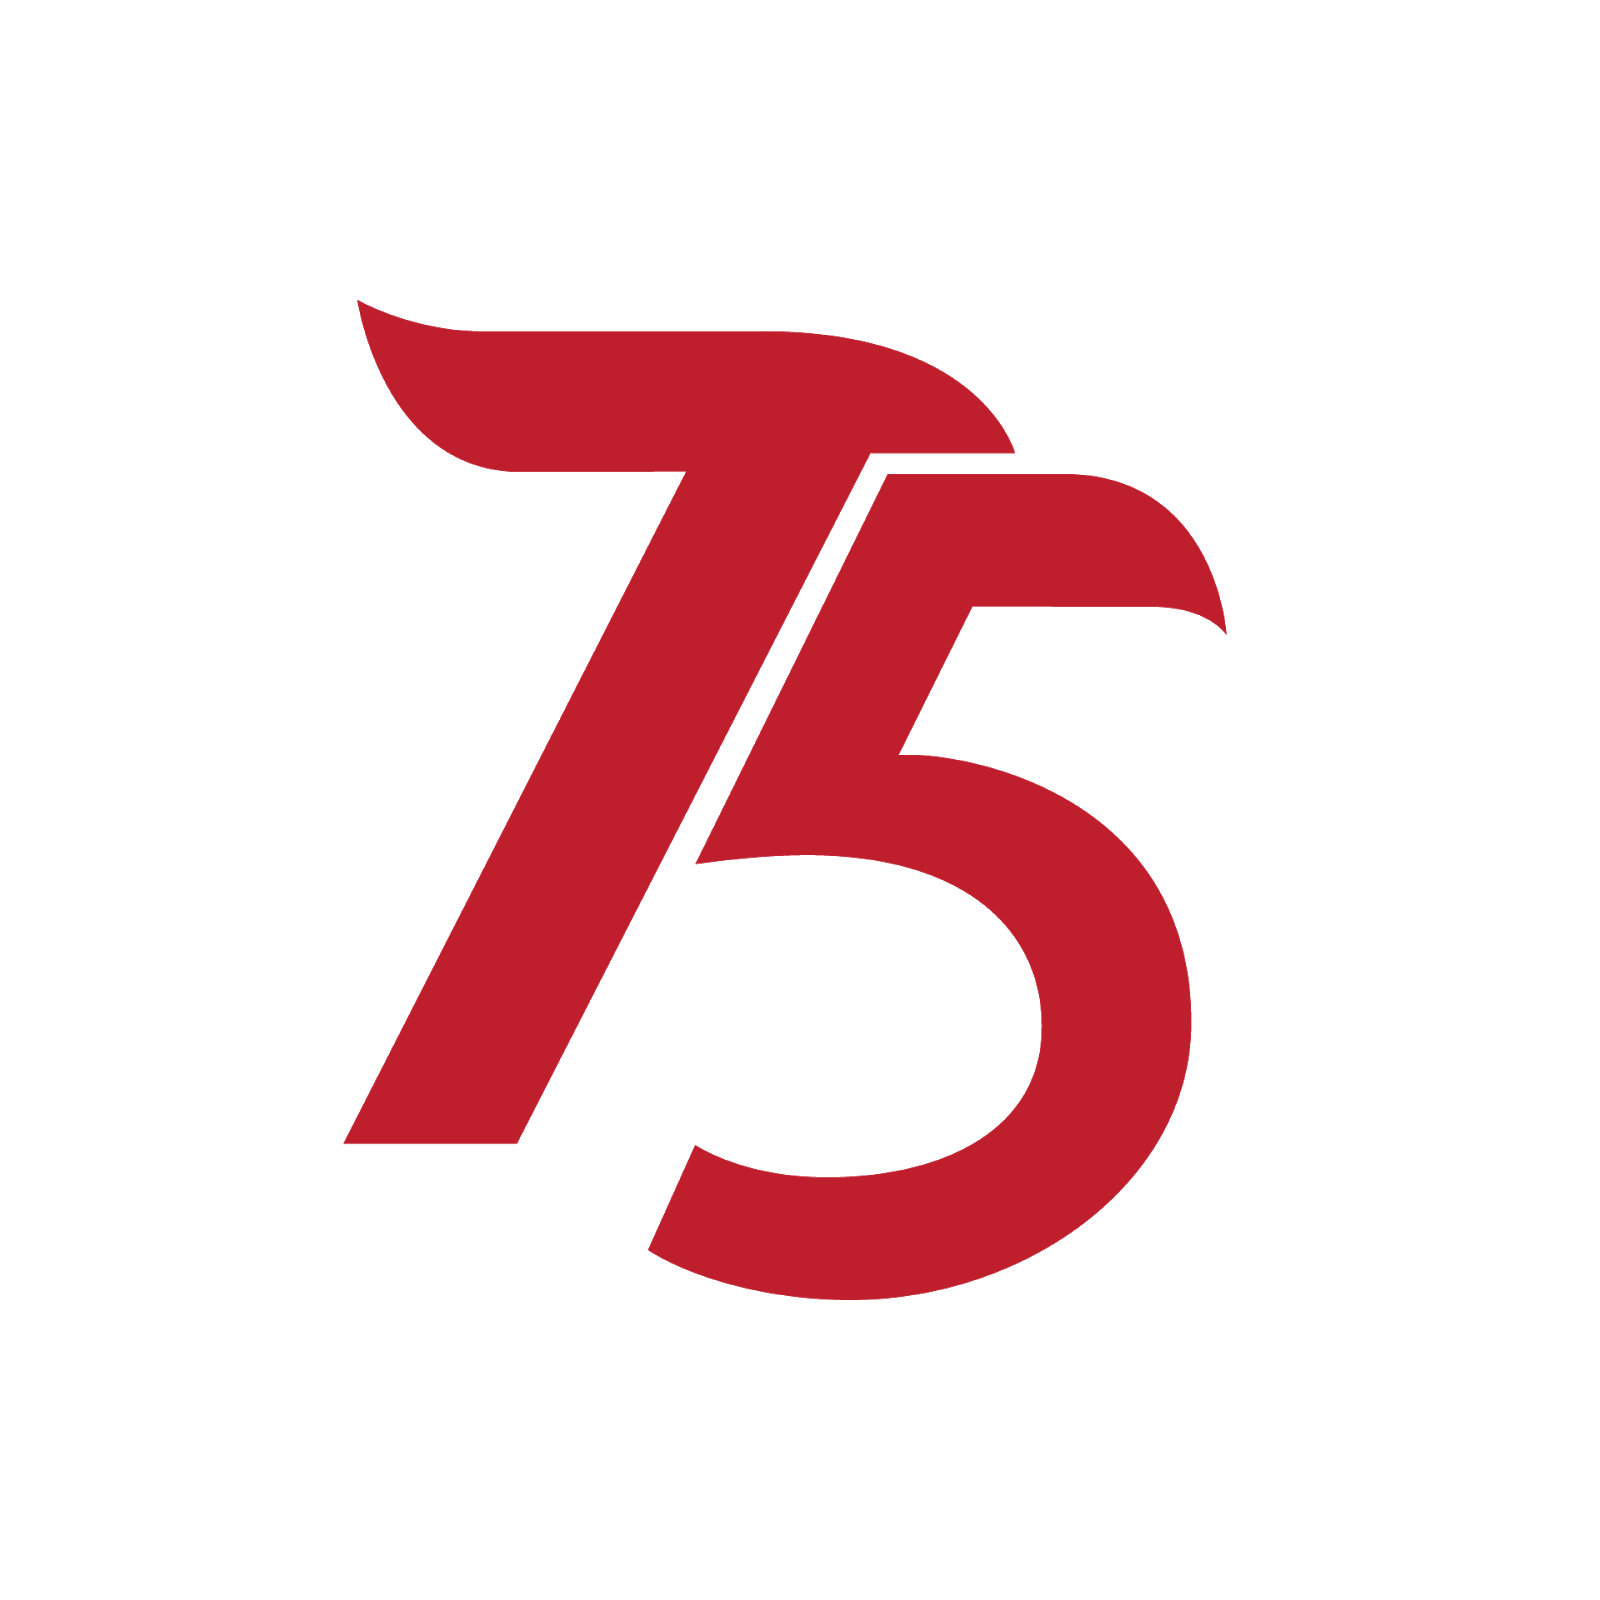 Kumpulan ide Logo HUT RI ke 75 tahun 2020 - Mas Vian